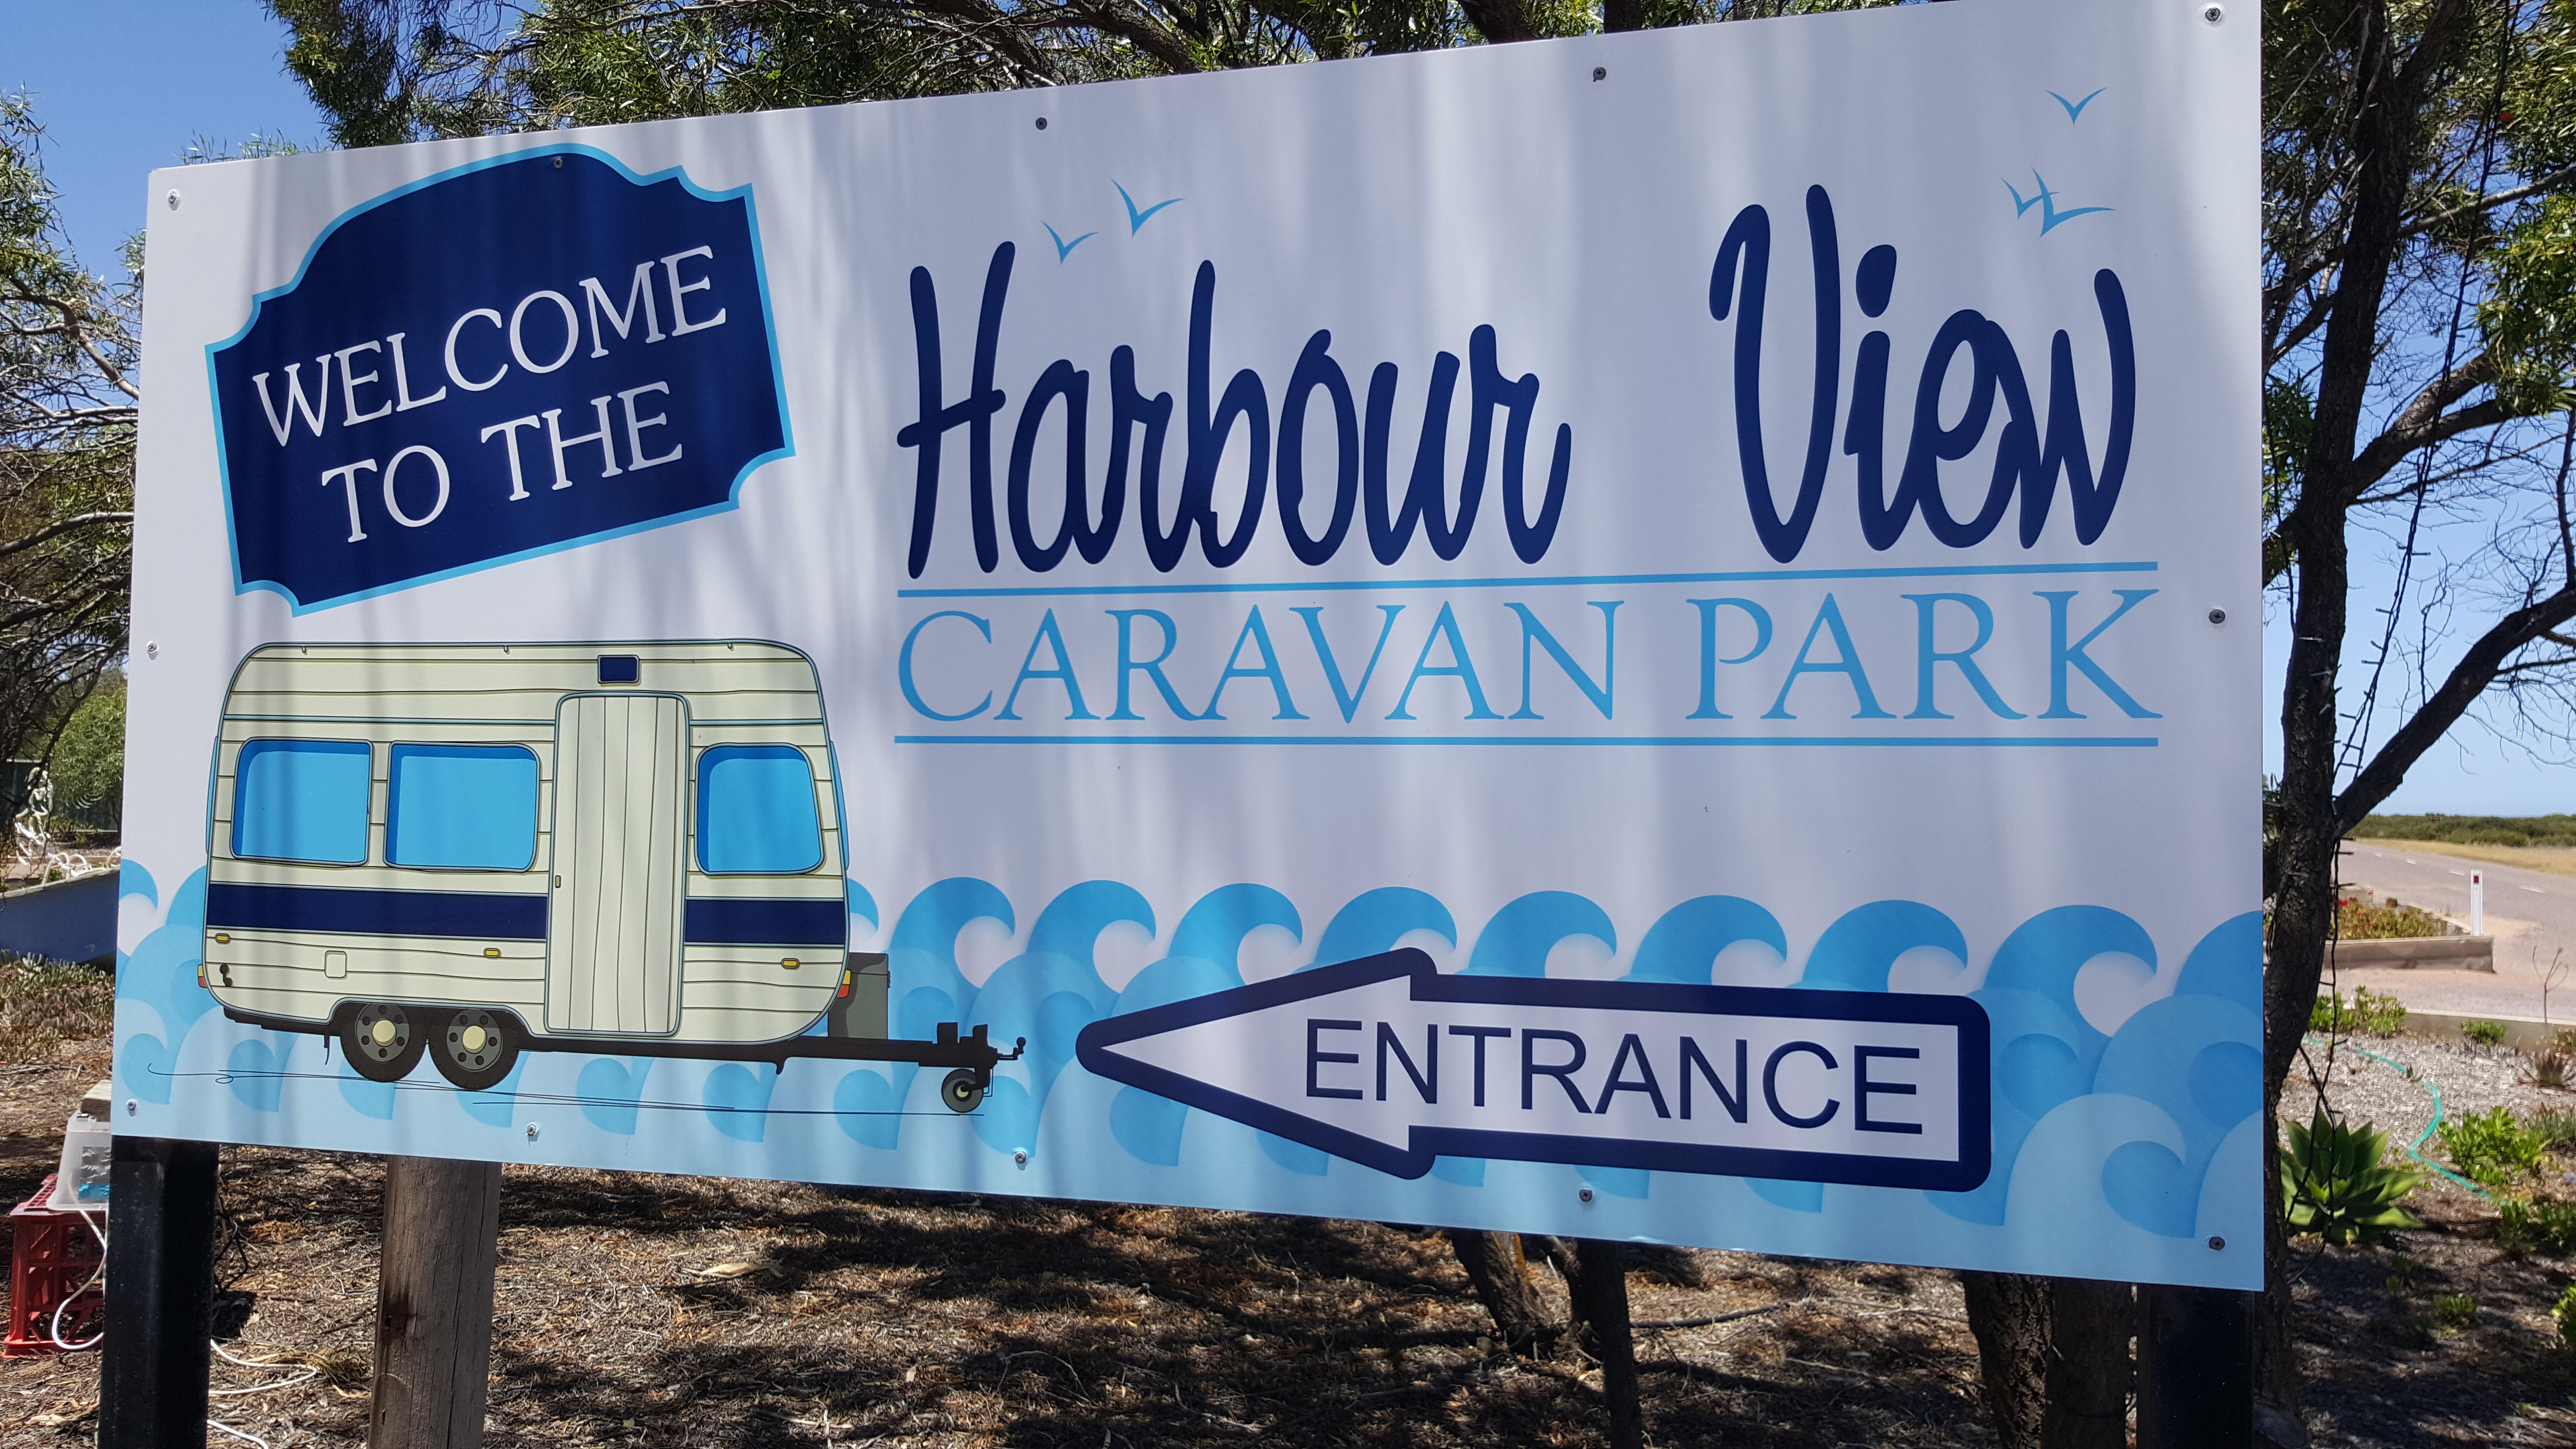 Harbour View Caravan Park Cowell (08) 8629 2216